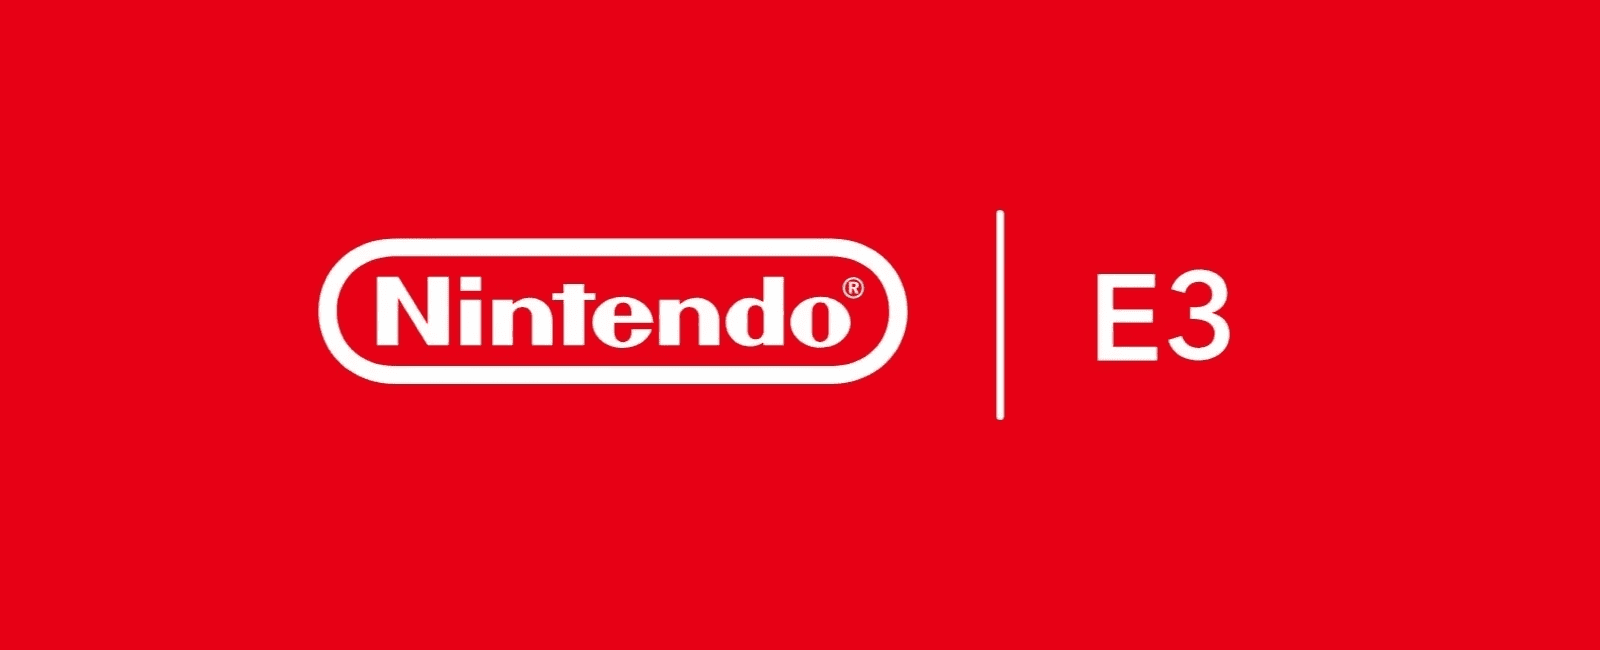 Nintendo - E3